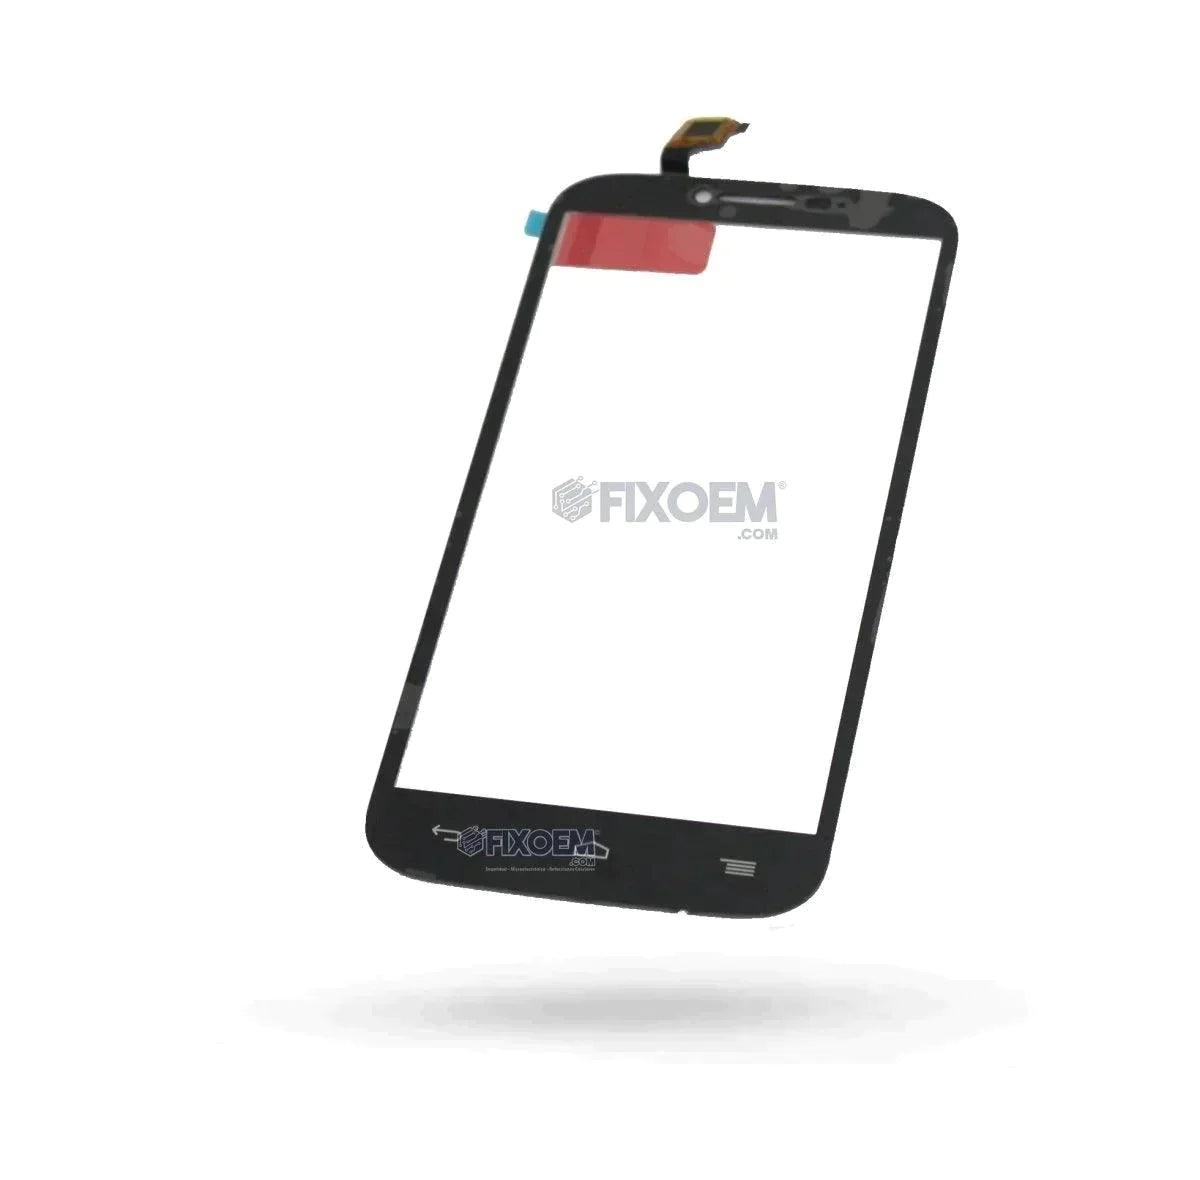 Touch Alcatel Pop C9 7047 a solo $ 70.00 Refaccion y puestos celulares, refurbish y microelectronica.- FixOEM